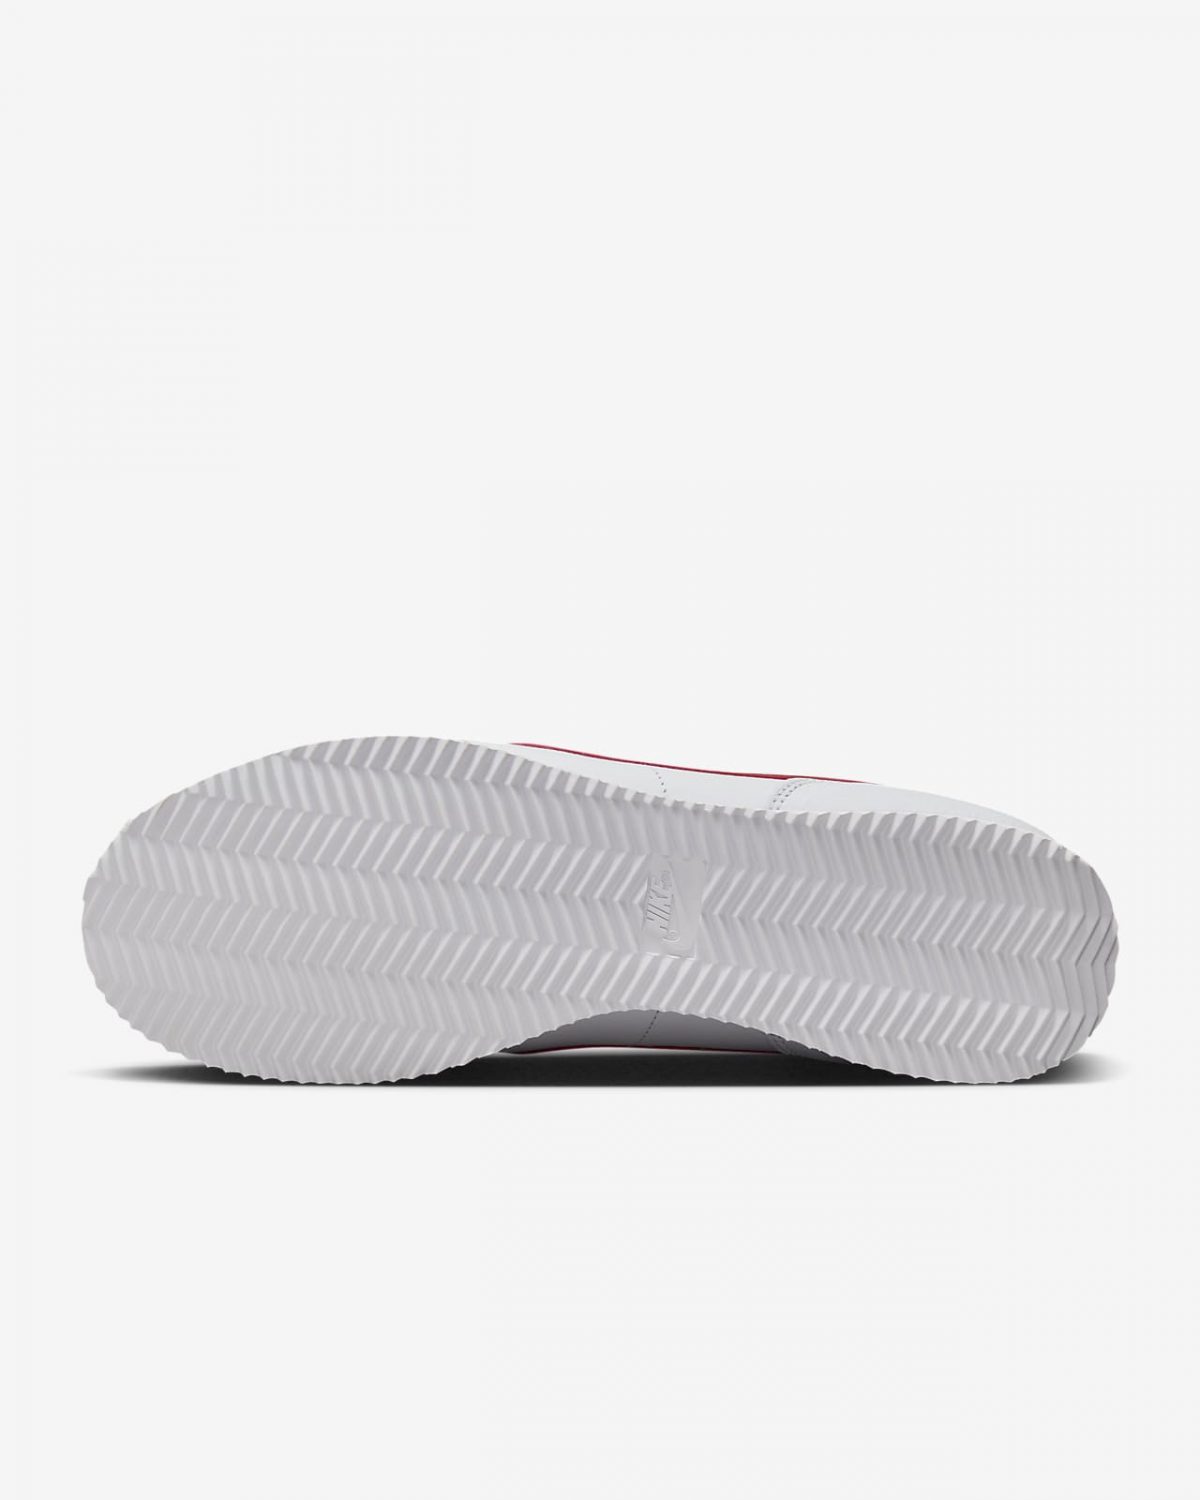 Мужские кроссовки Nike Cortez белые фотография